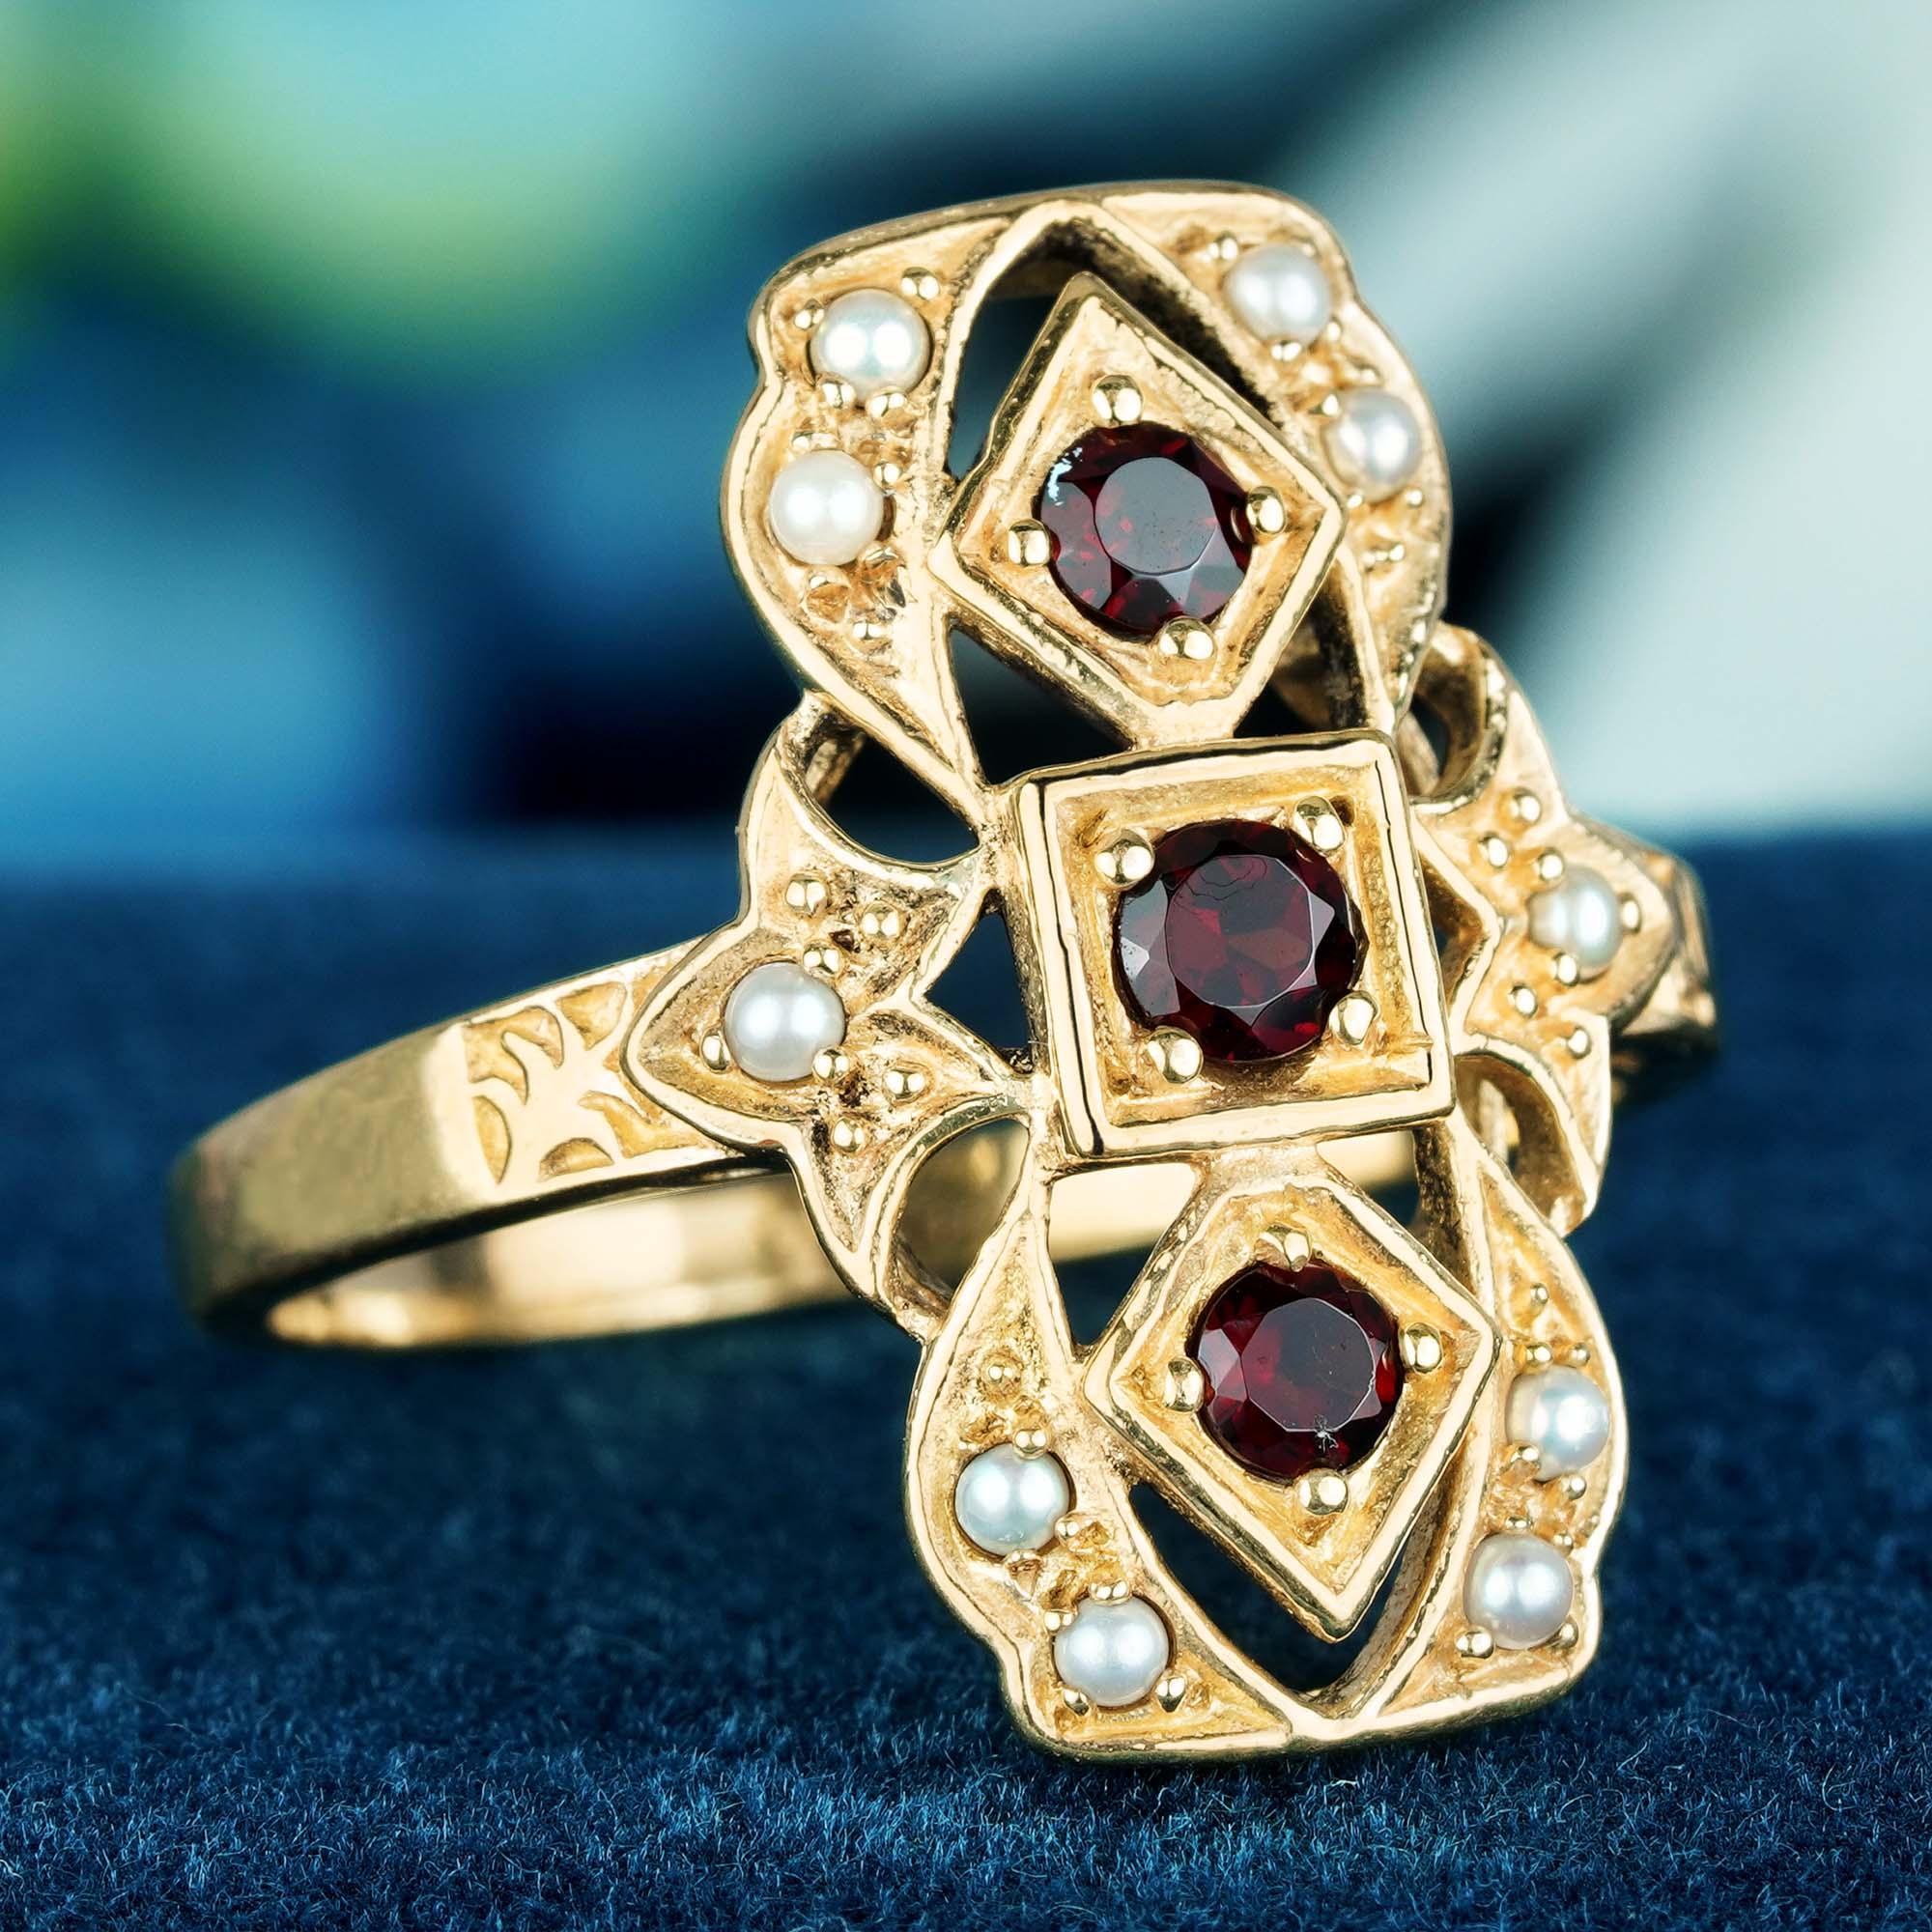 Mit diesem Ring von GEMMA FILIGREE verleihen Sie Ihrer Hand eine zarte und einzigartige Ästhetik. Unsere Goldringe mit antikem Design stehen für Zartheit und leichte Durchbrochenheit, während sie gleichzeitig die Festigkeit für das tägliche Tragen